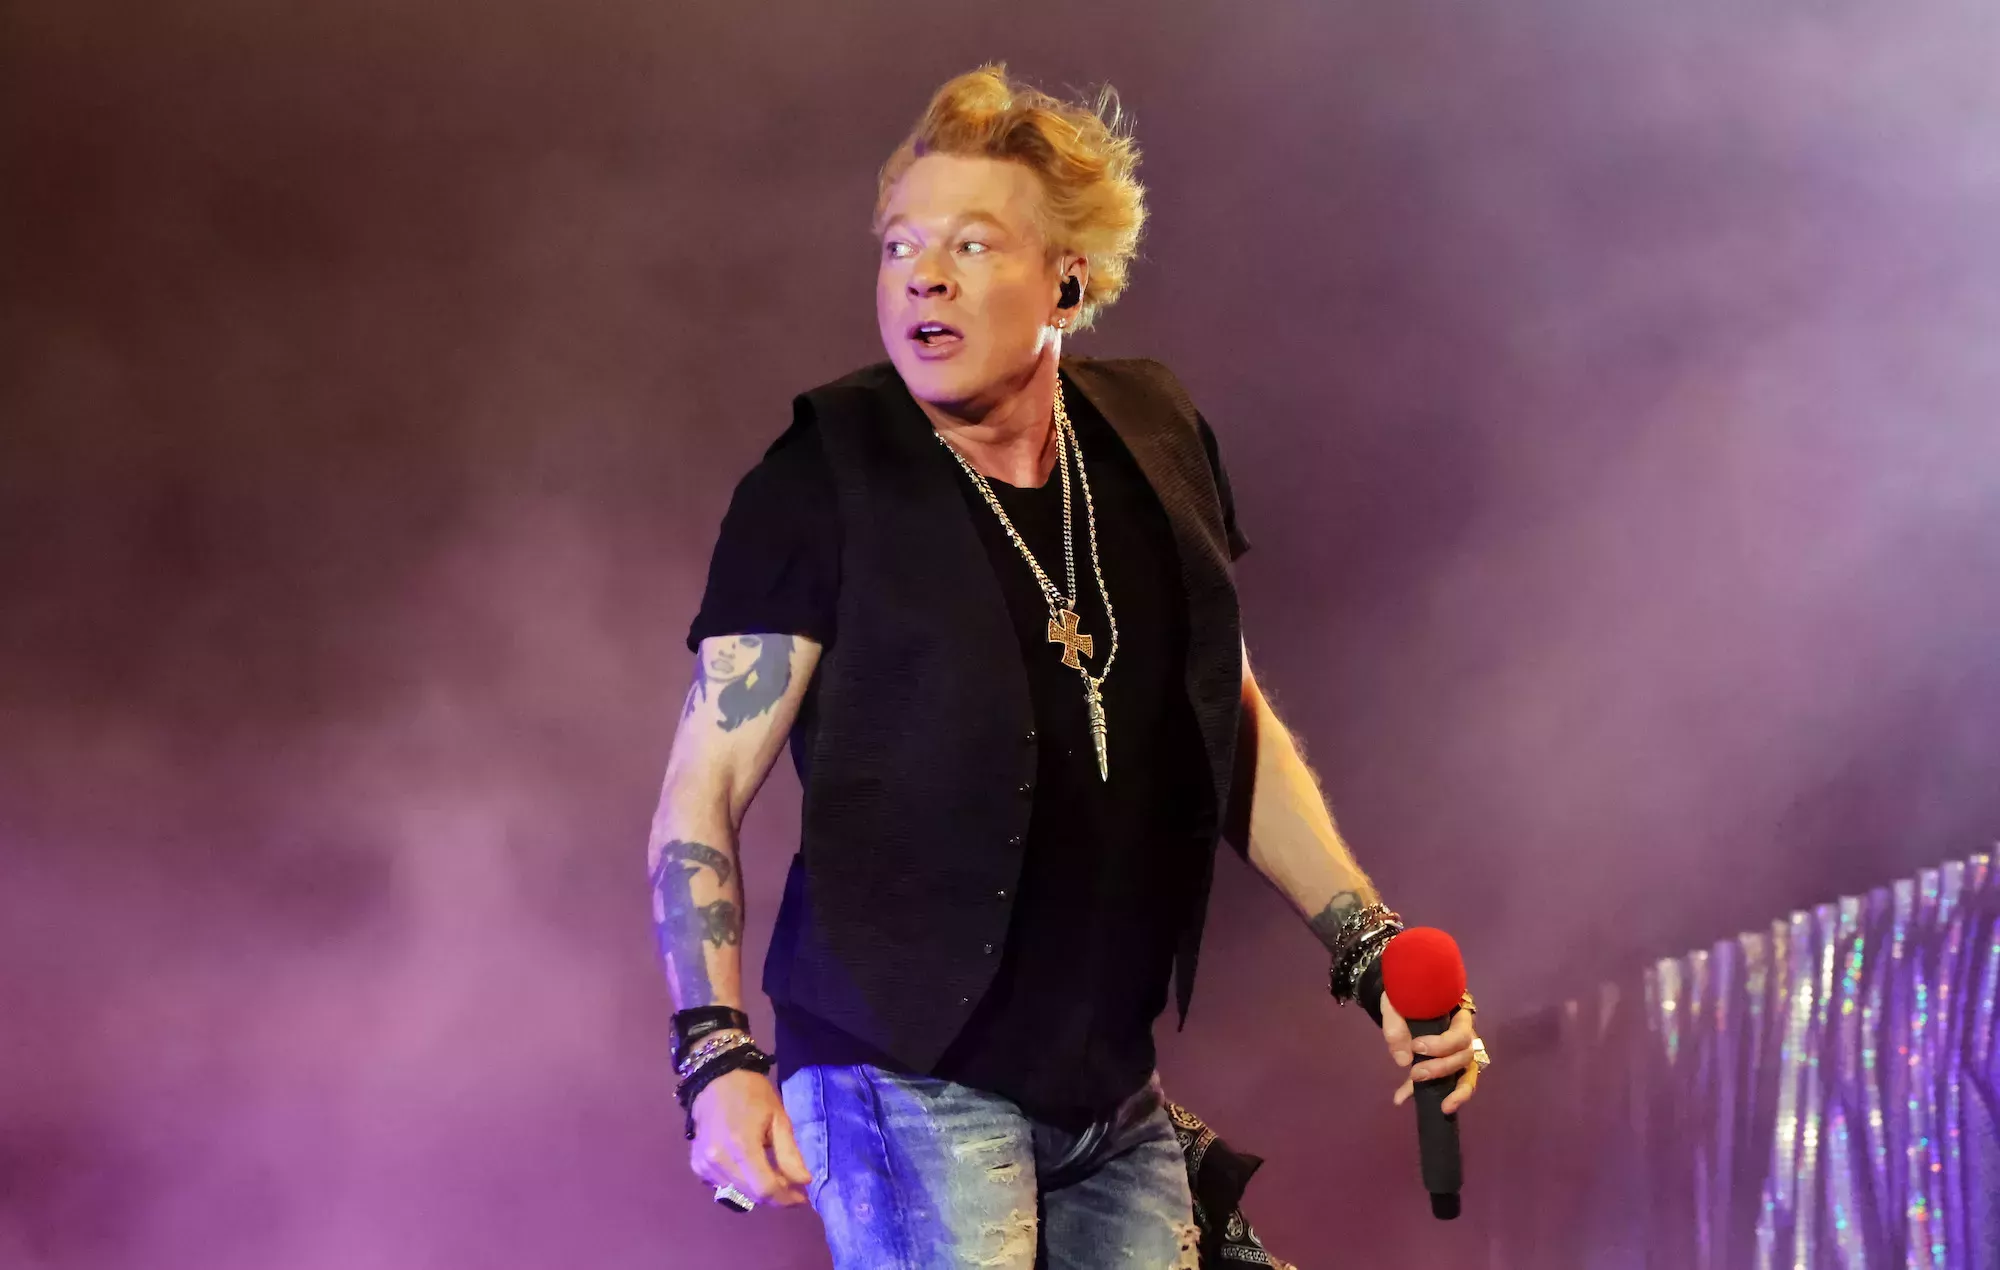 Axl Rose dice que dejará de lanzar el micrófono al público después de que una mujer denuncie una lesión en un concierto de Guns N' Roses